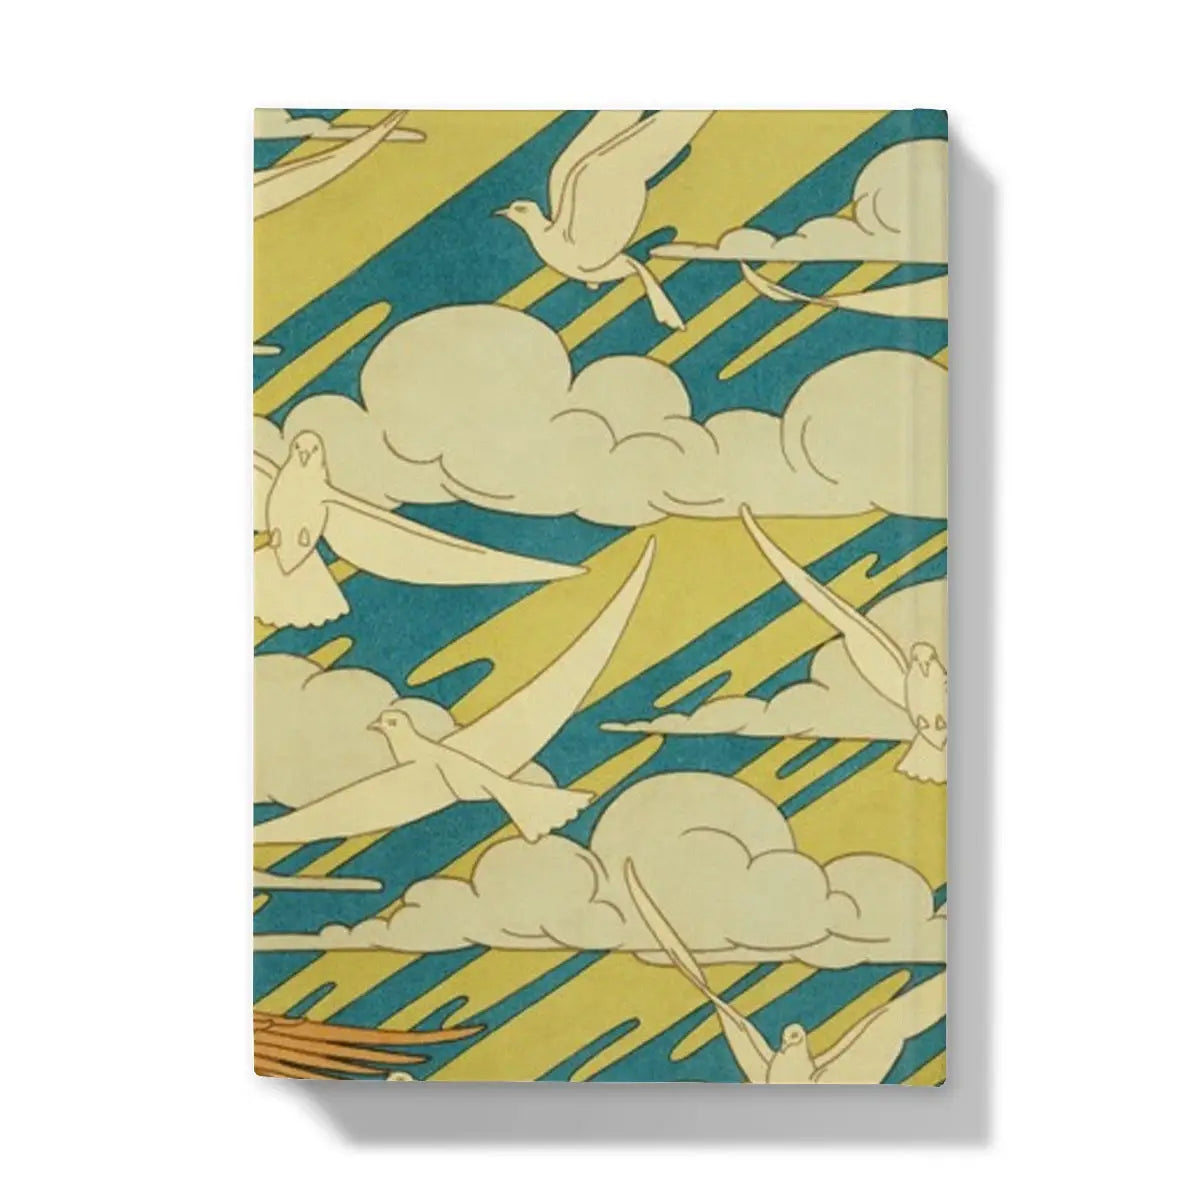 Aigles Et Pigeons - Maurice Pillard Verneuil Hardback Journal - Notebooks & Notepads - Aesthetic Art